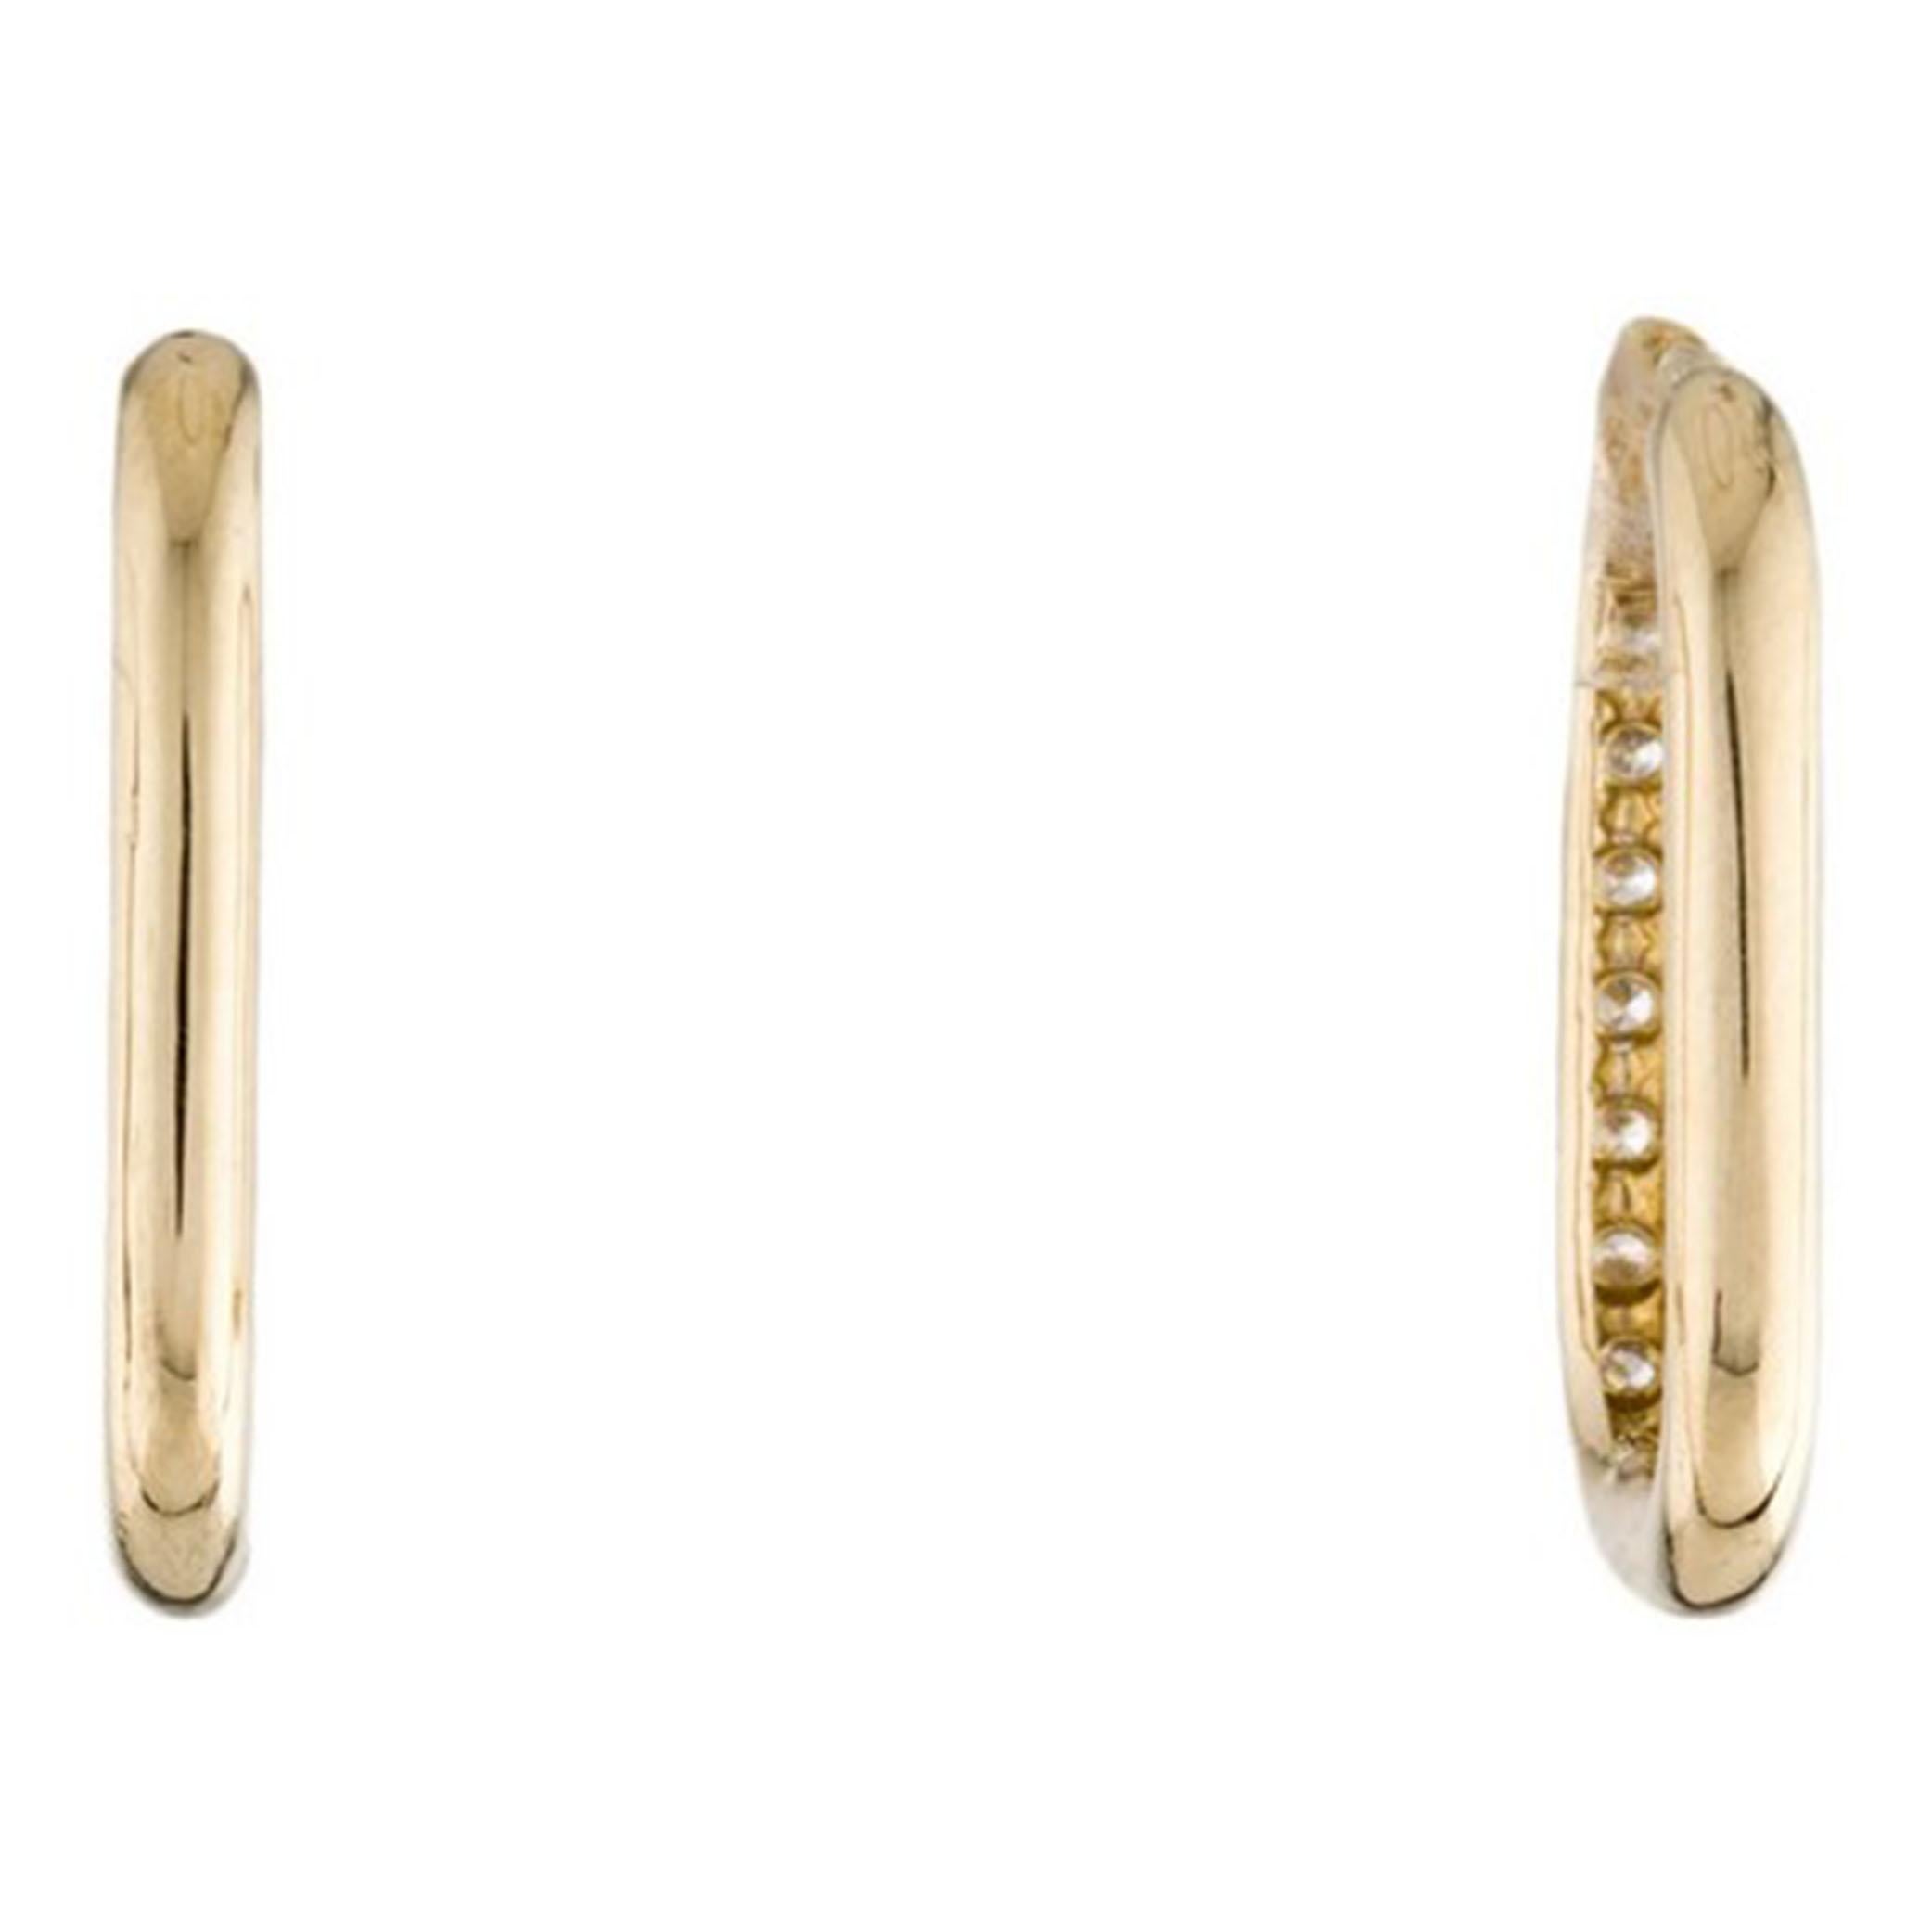 Cette magnifique paire de boucles d'oreilles pendantes en forme de trombone est ornée de 0,25 ct de diamants ronds étincelants. Les diamants sont sertis dans de l'or jaune 14k hautement poli. Les boucles d'oreilles sont sécurisées par des fermetures